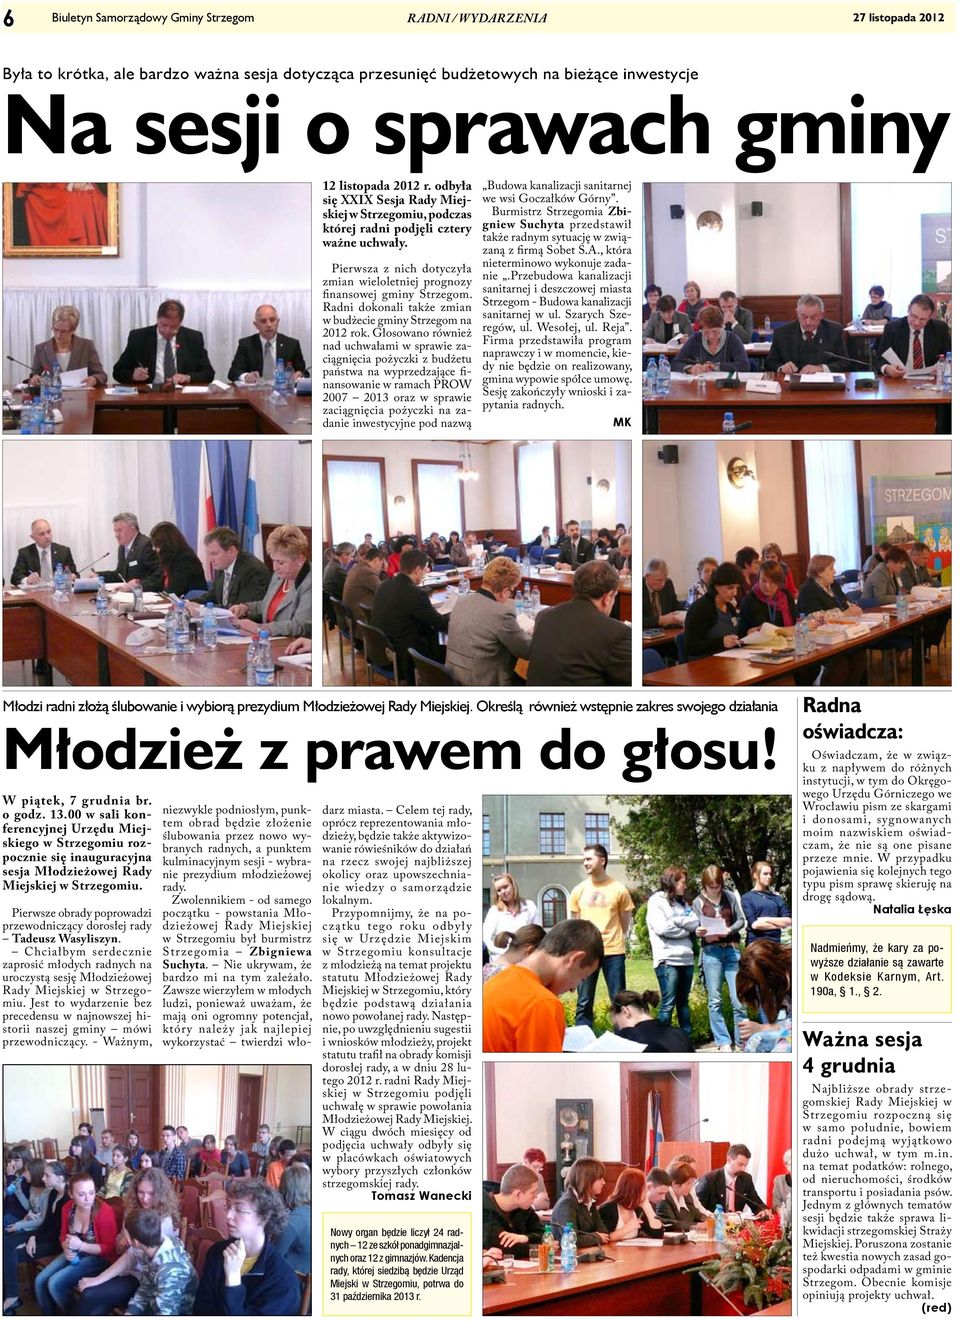 Radni dokonali także zmian w budżecie gminy Strzegom na 2012 rok.